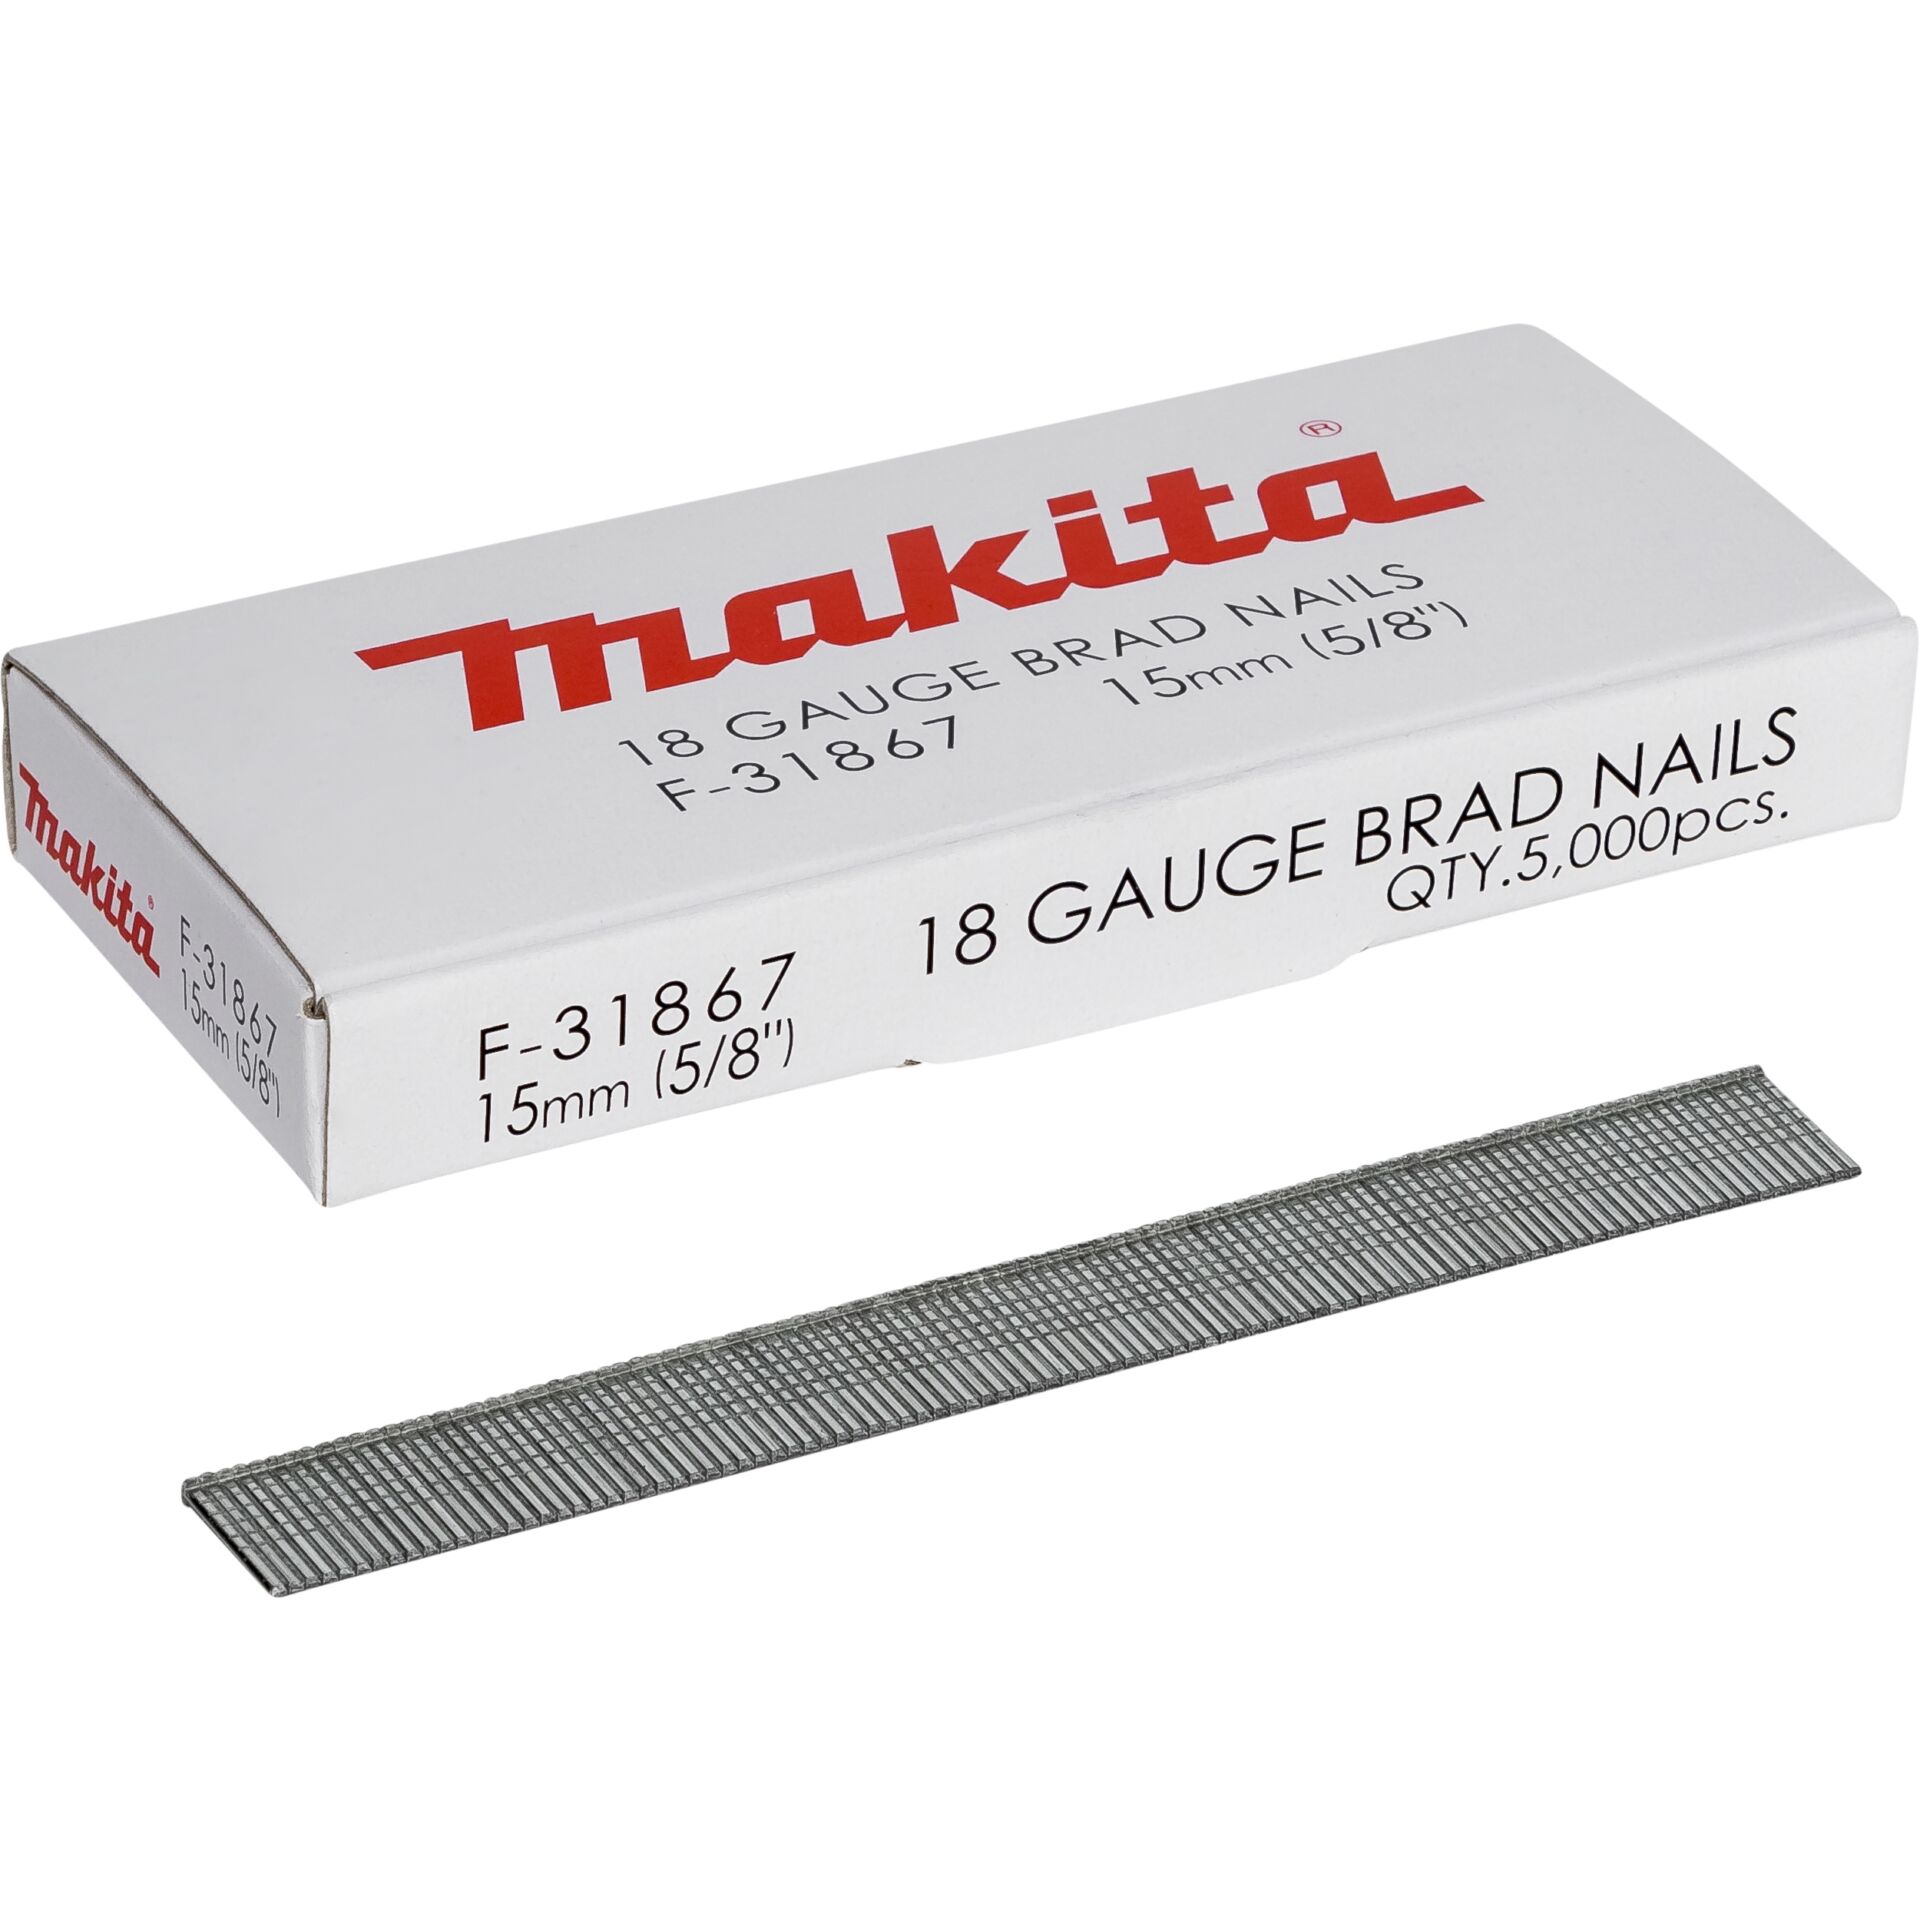 Makita Gauge Brad Nails 1,2x15mm F-31867  5000 pcs.